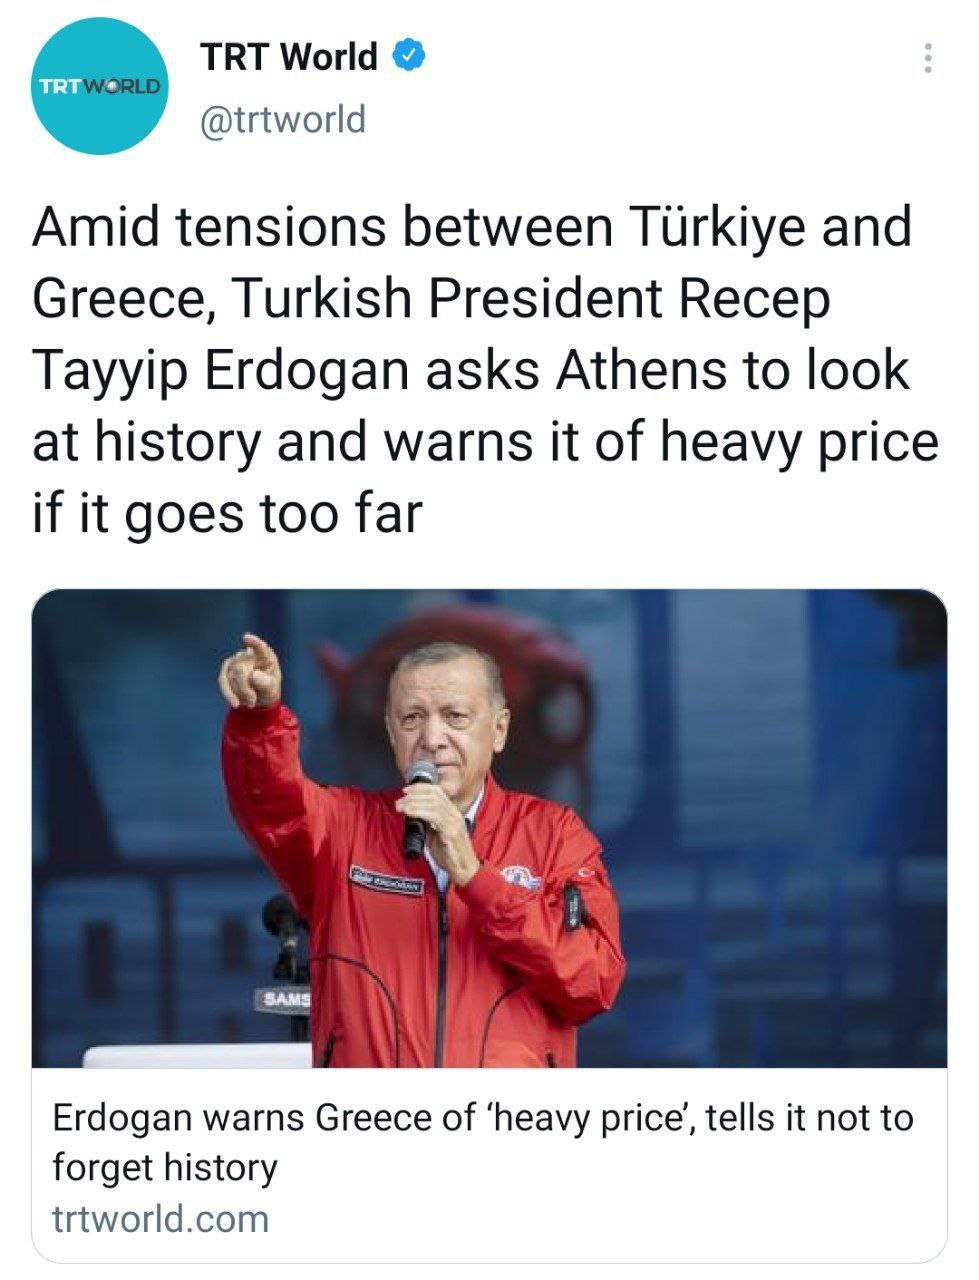 تنش بین آنکارا و آتن بالا گرفت / تهدید یونان توسط اردوغان